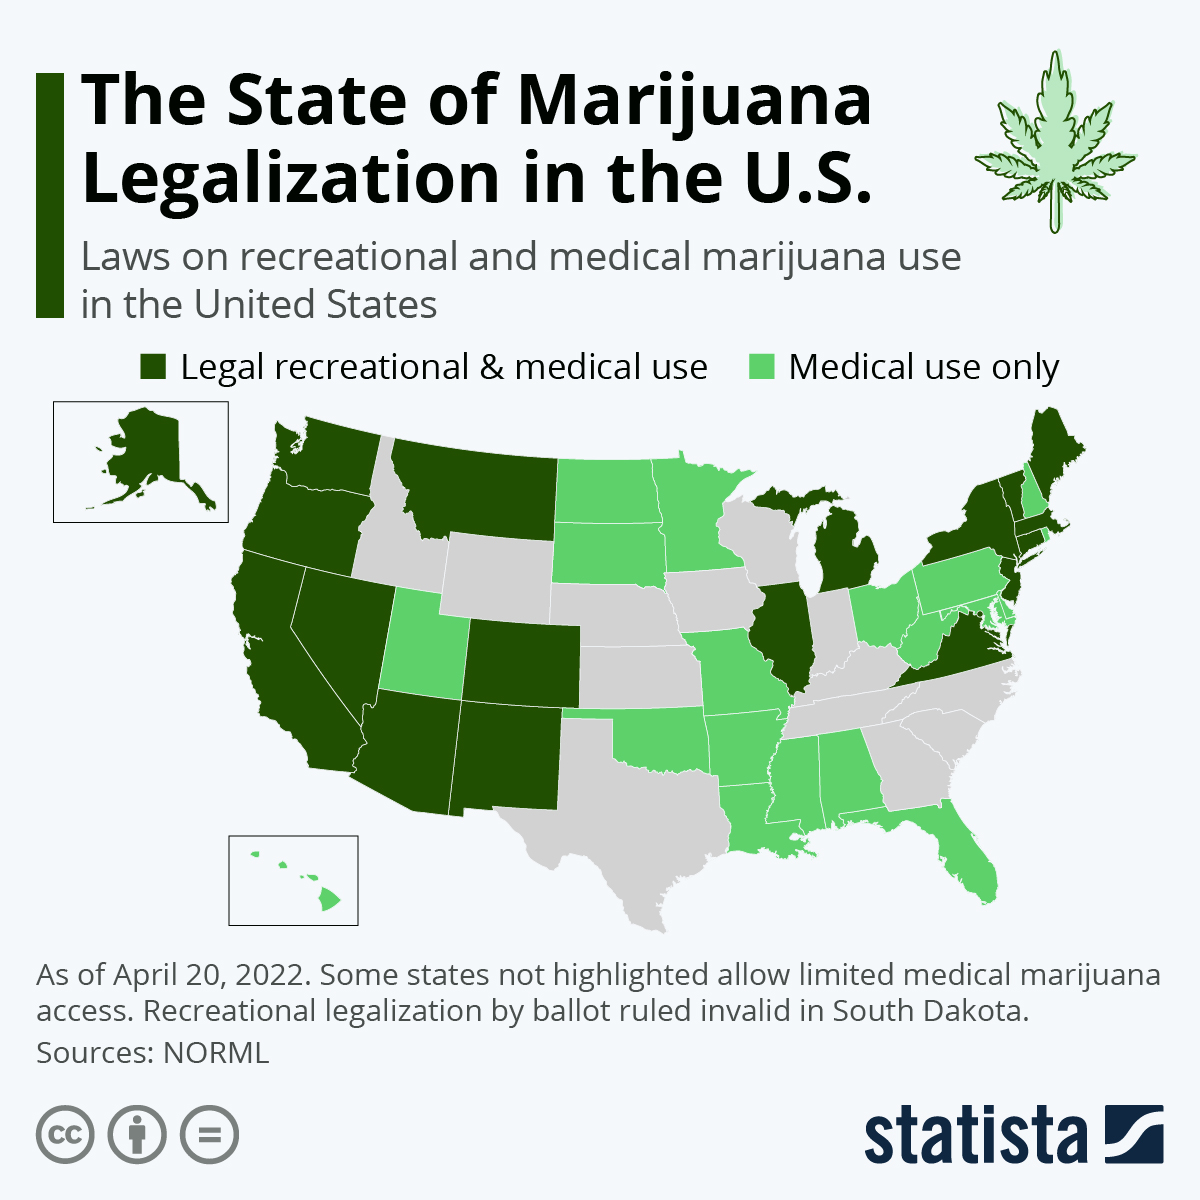 Marijuana Legalization In The U.S.